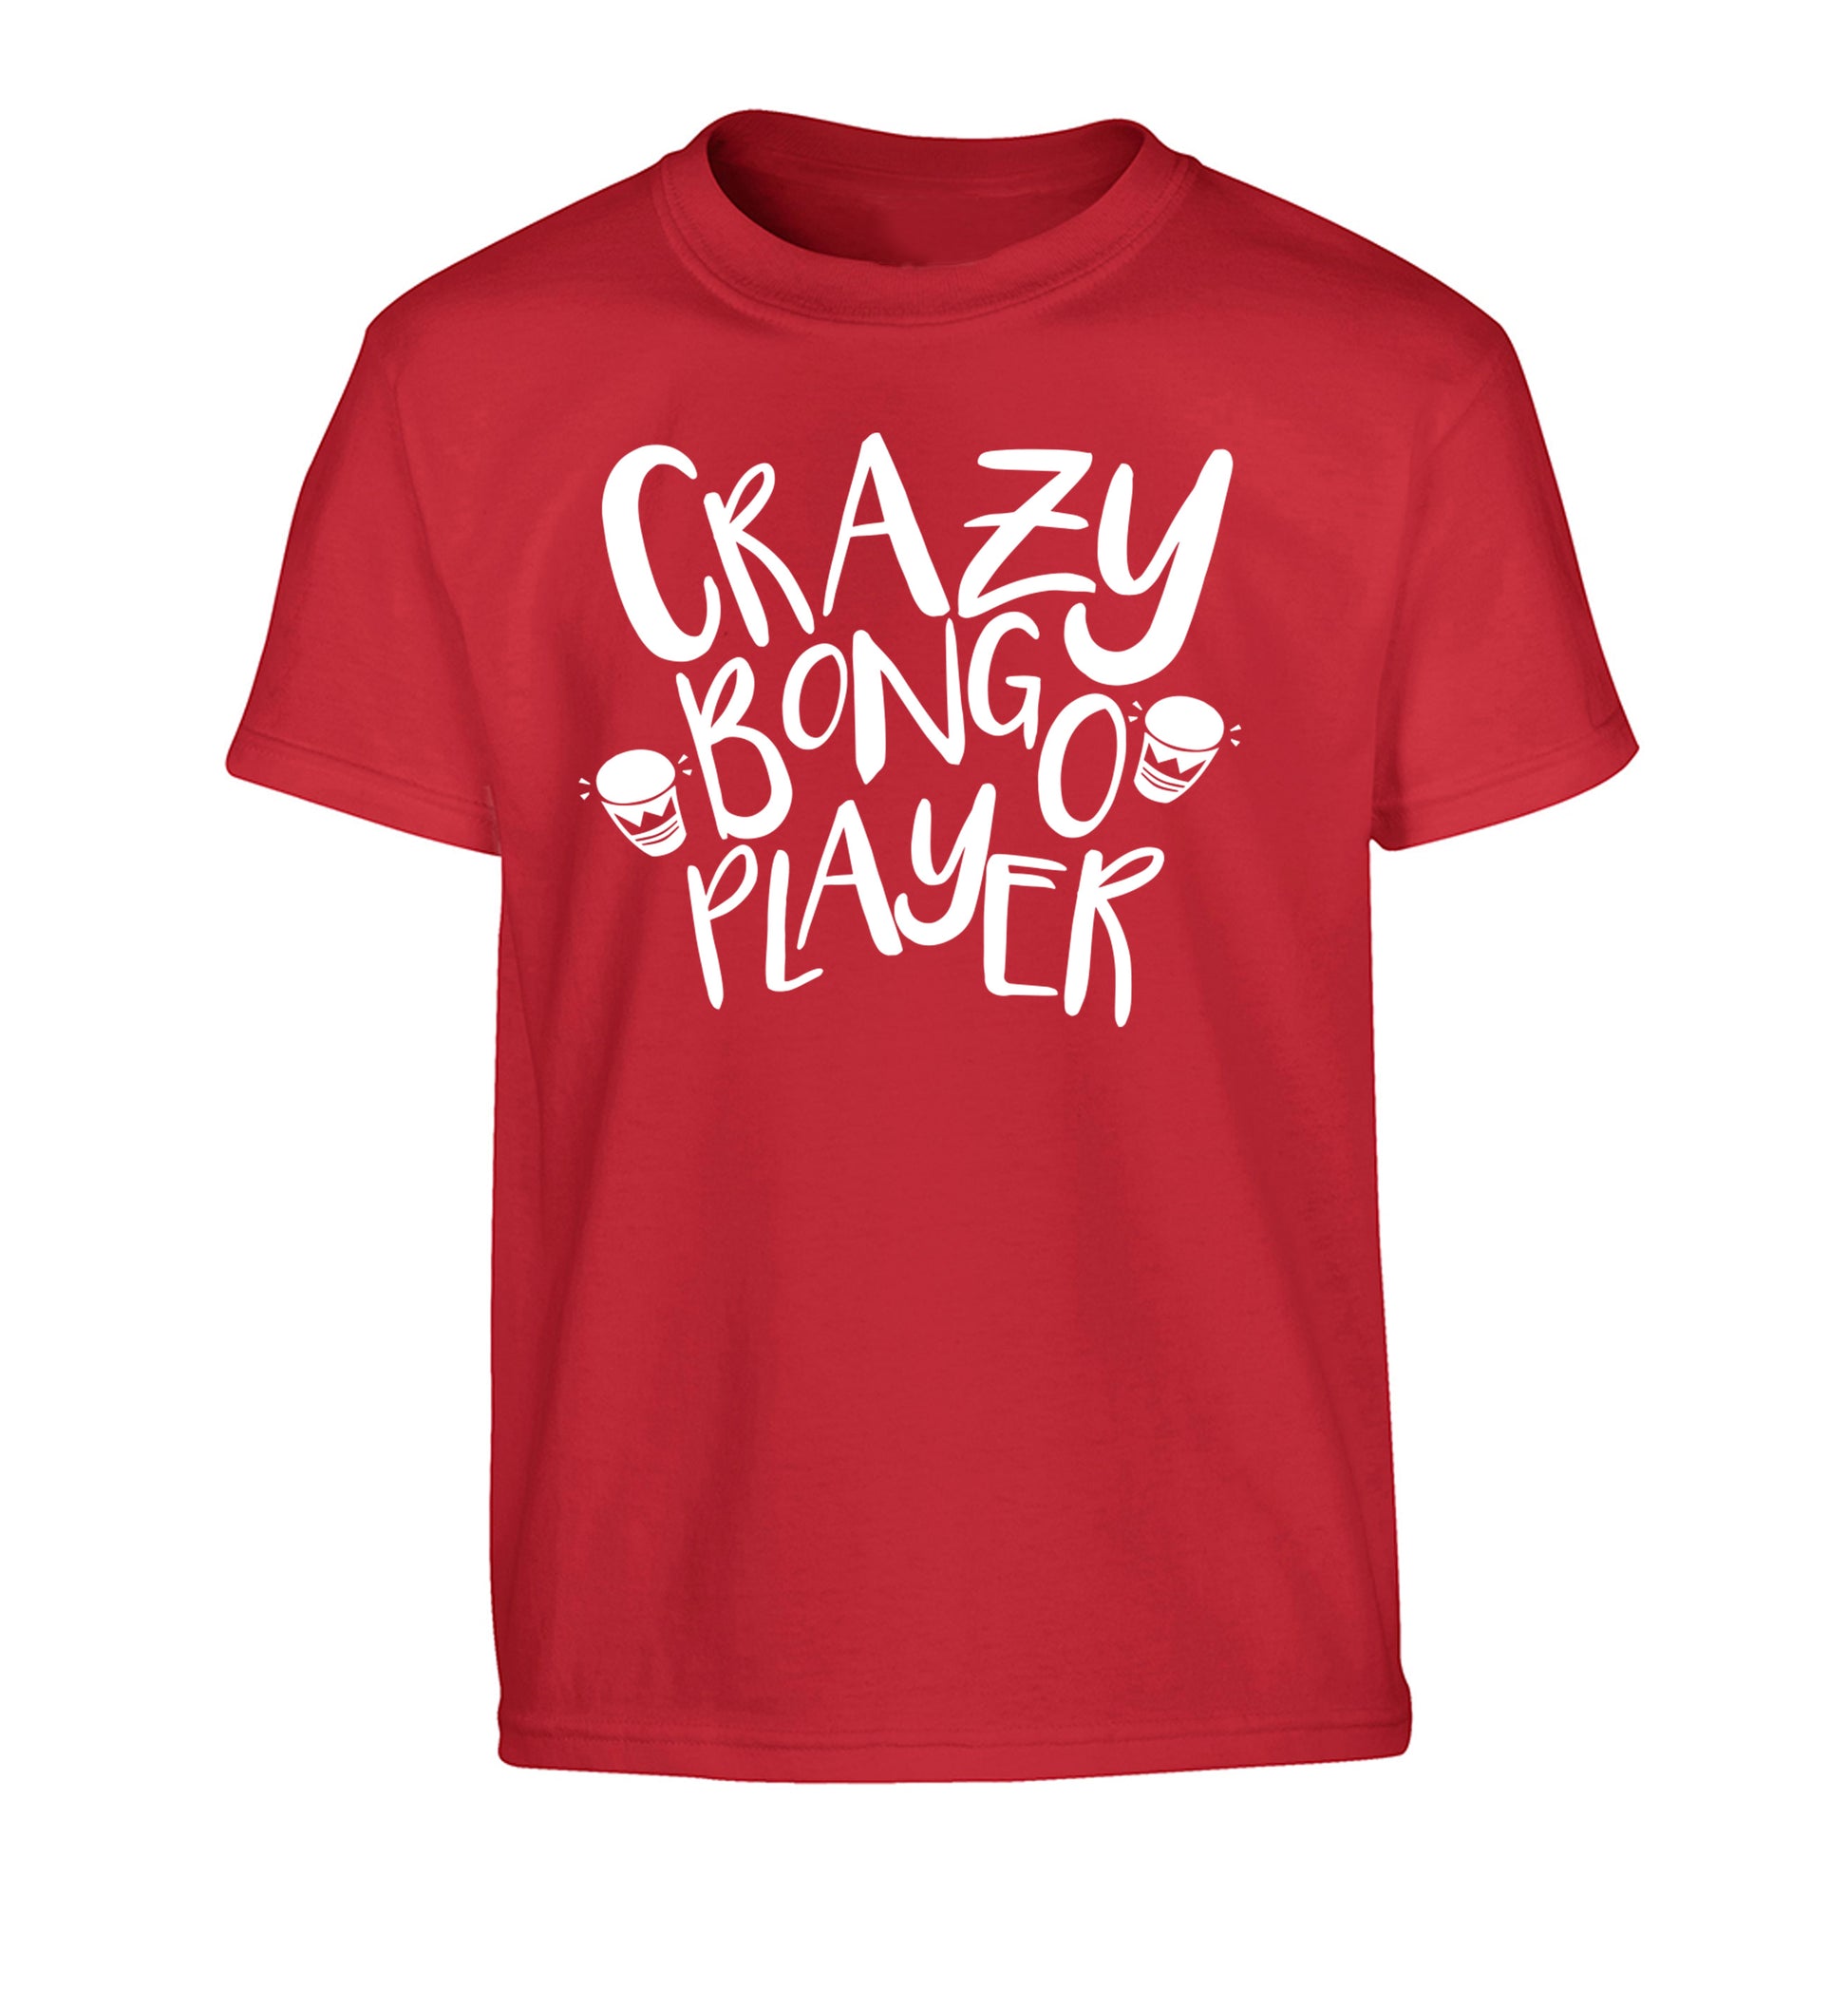 Crazy bongo player Children's red Tshirt 12-14 Years